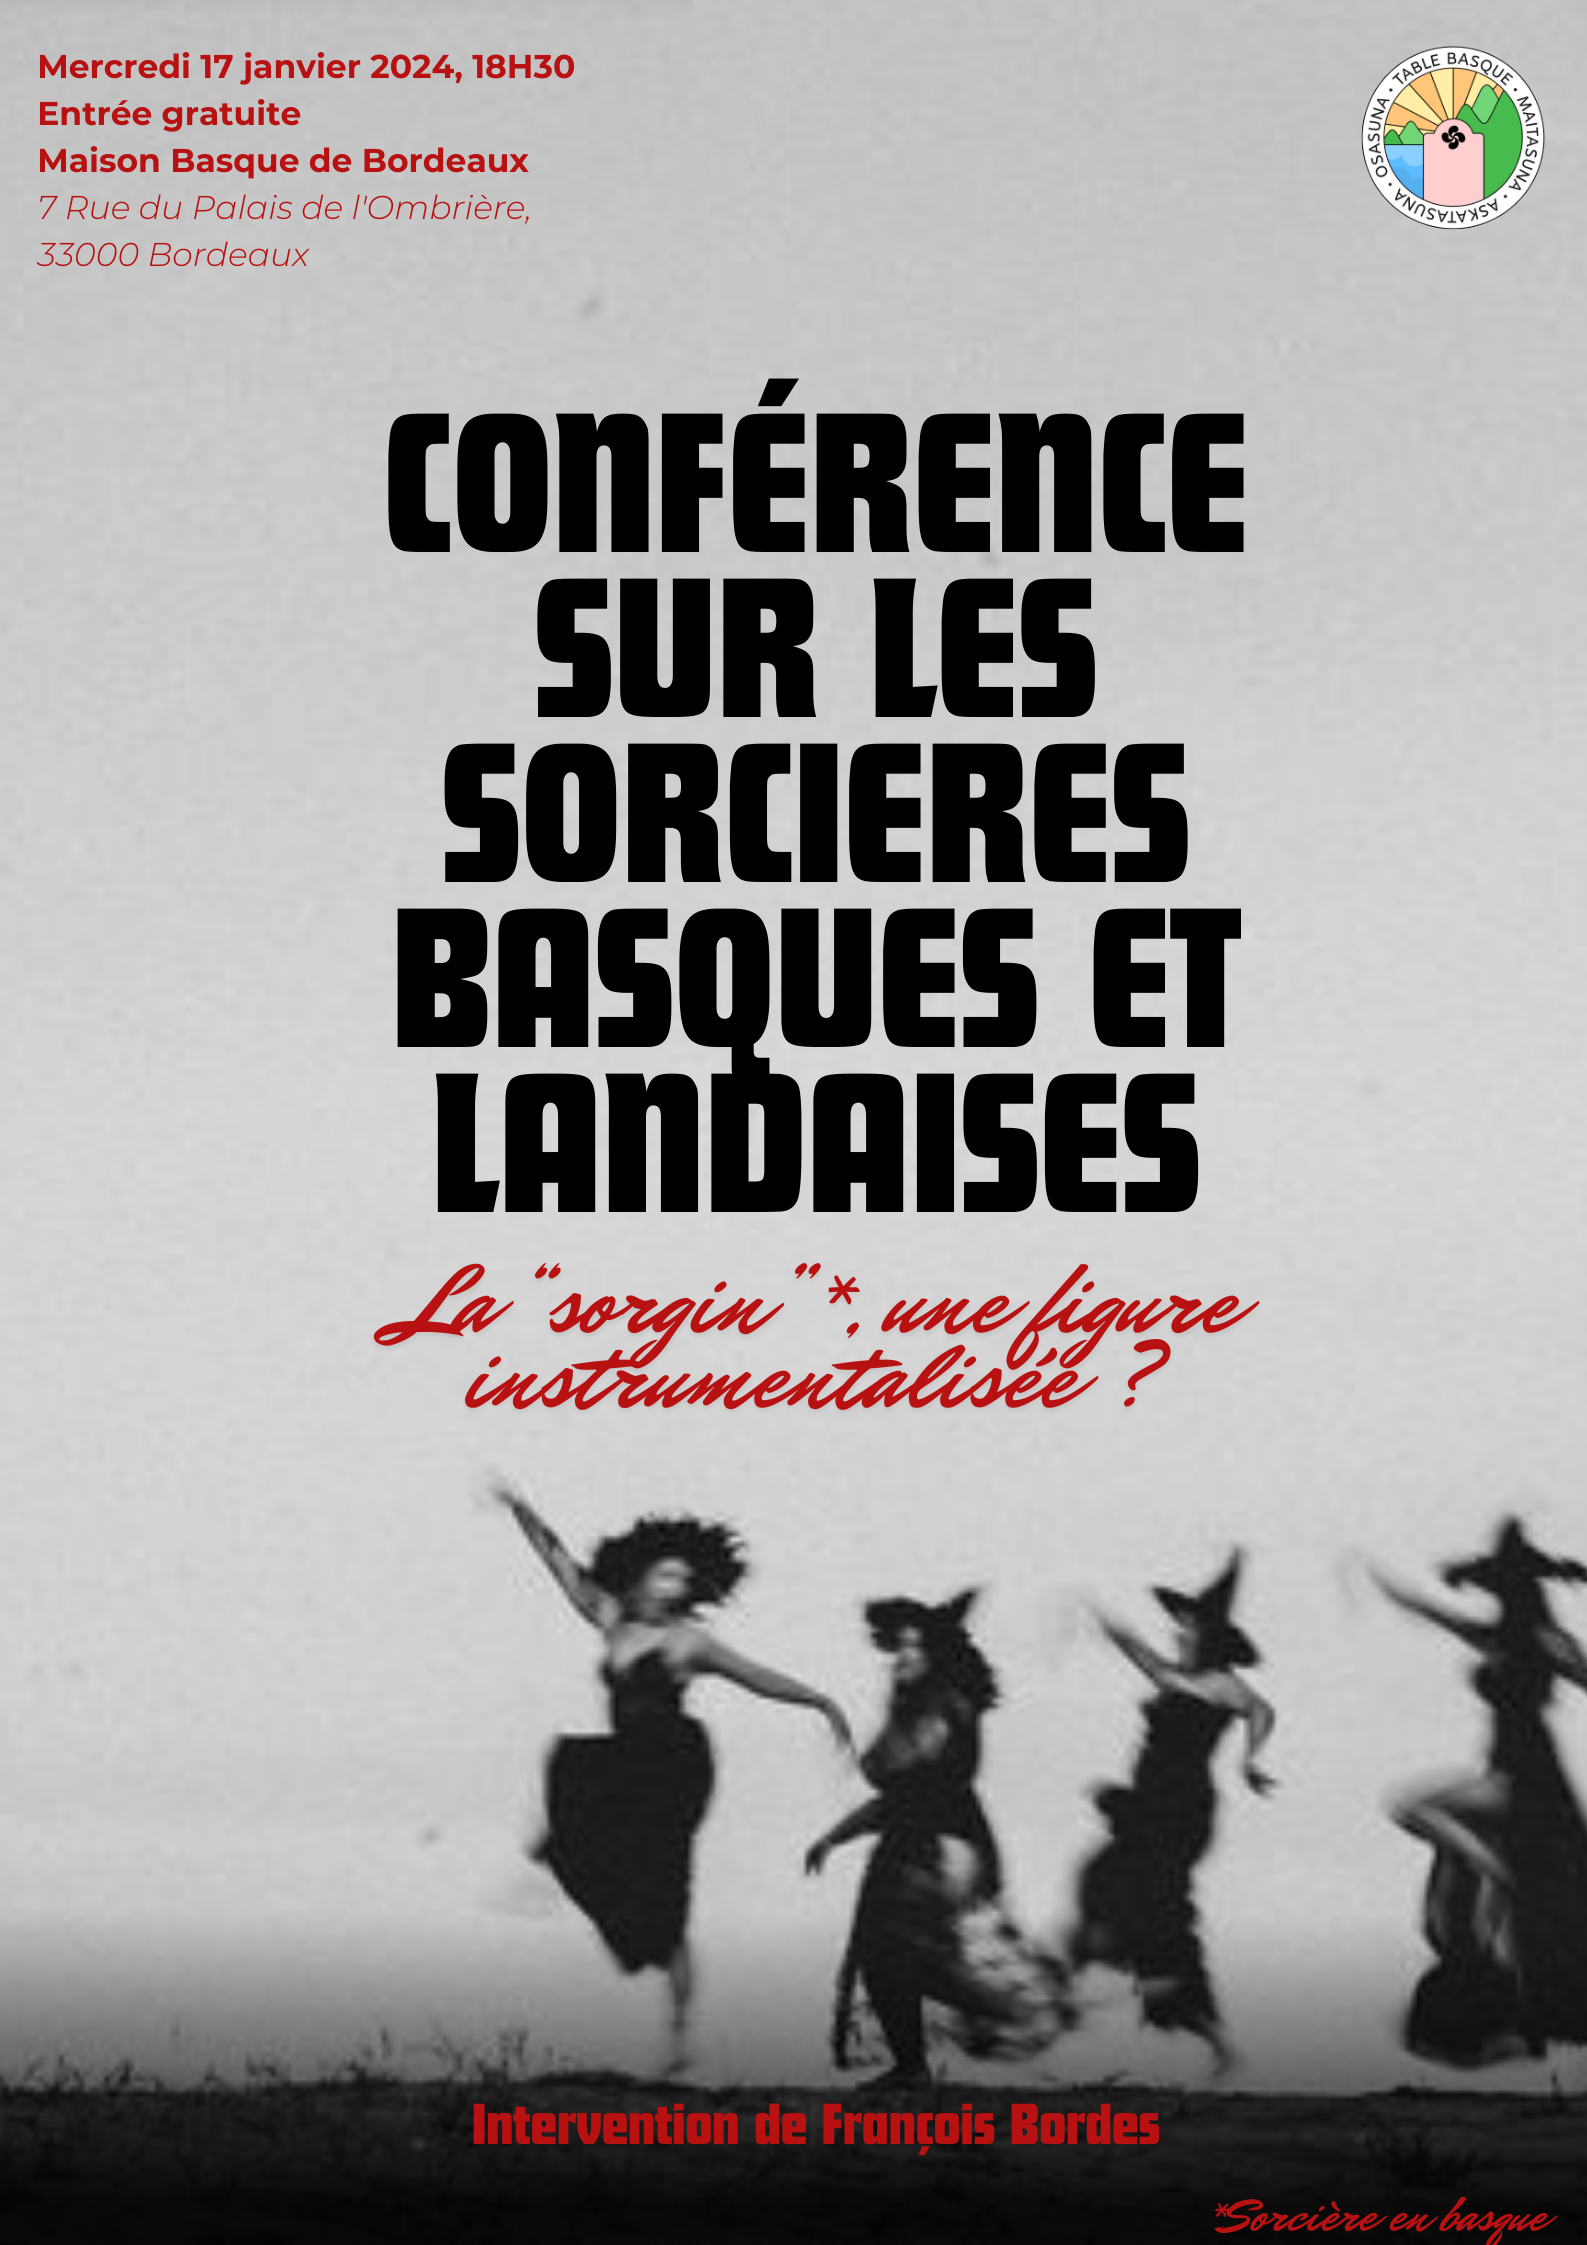 Conférence sur les sorcières basques basques et landaises